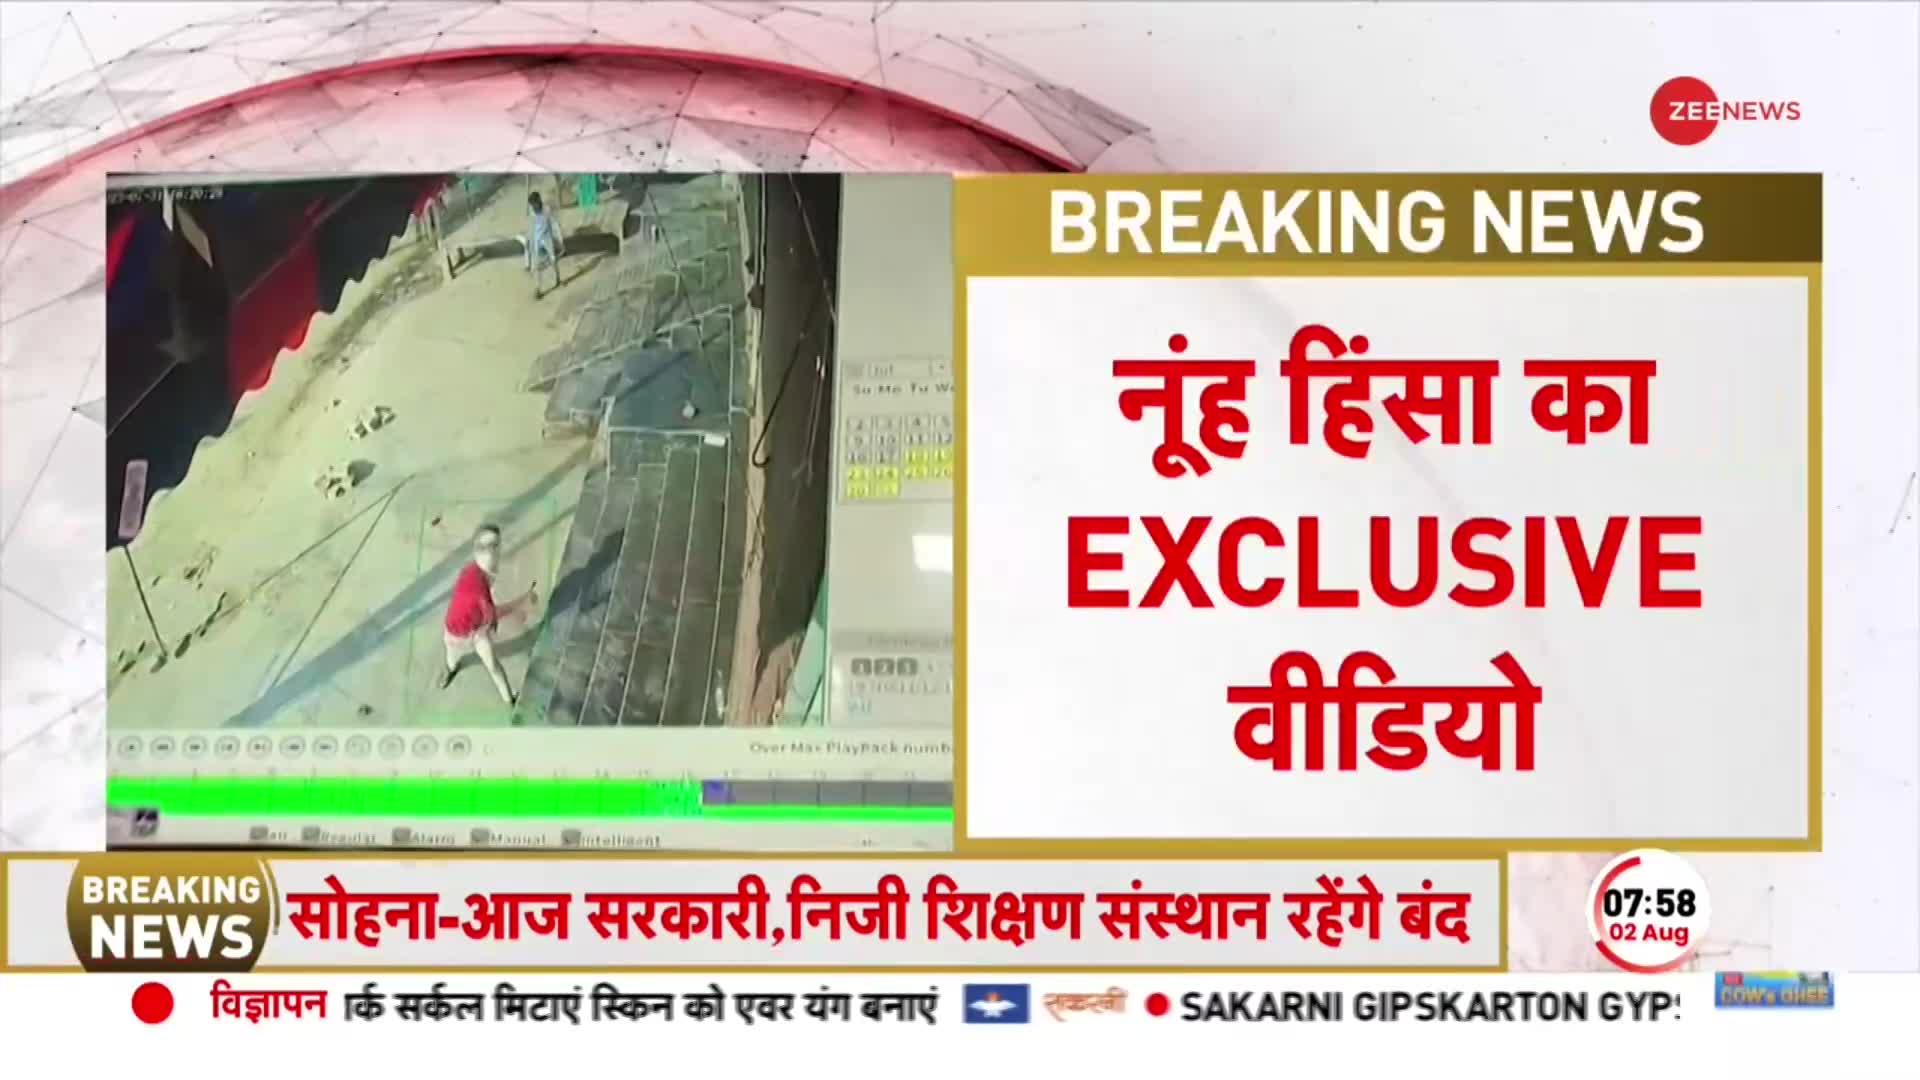 Nuh Violence Viral Video: Haryana Hinsa से जुड़ा EXCLUSIVE वीडियो! CCTV को पत्थरों से तोड़ने की कोशिश